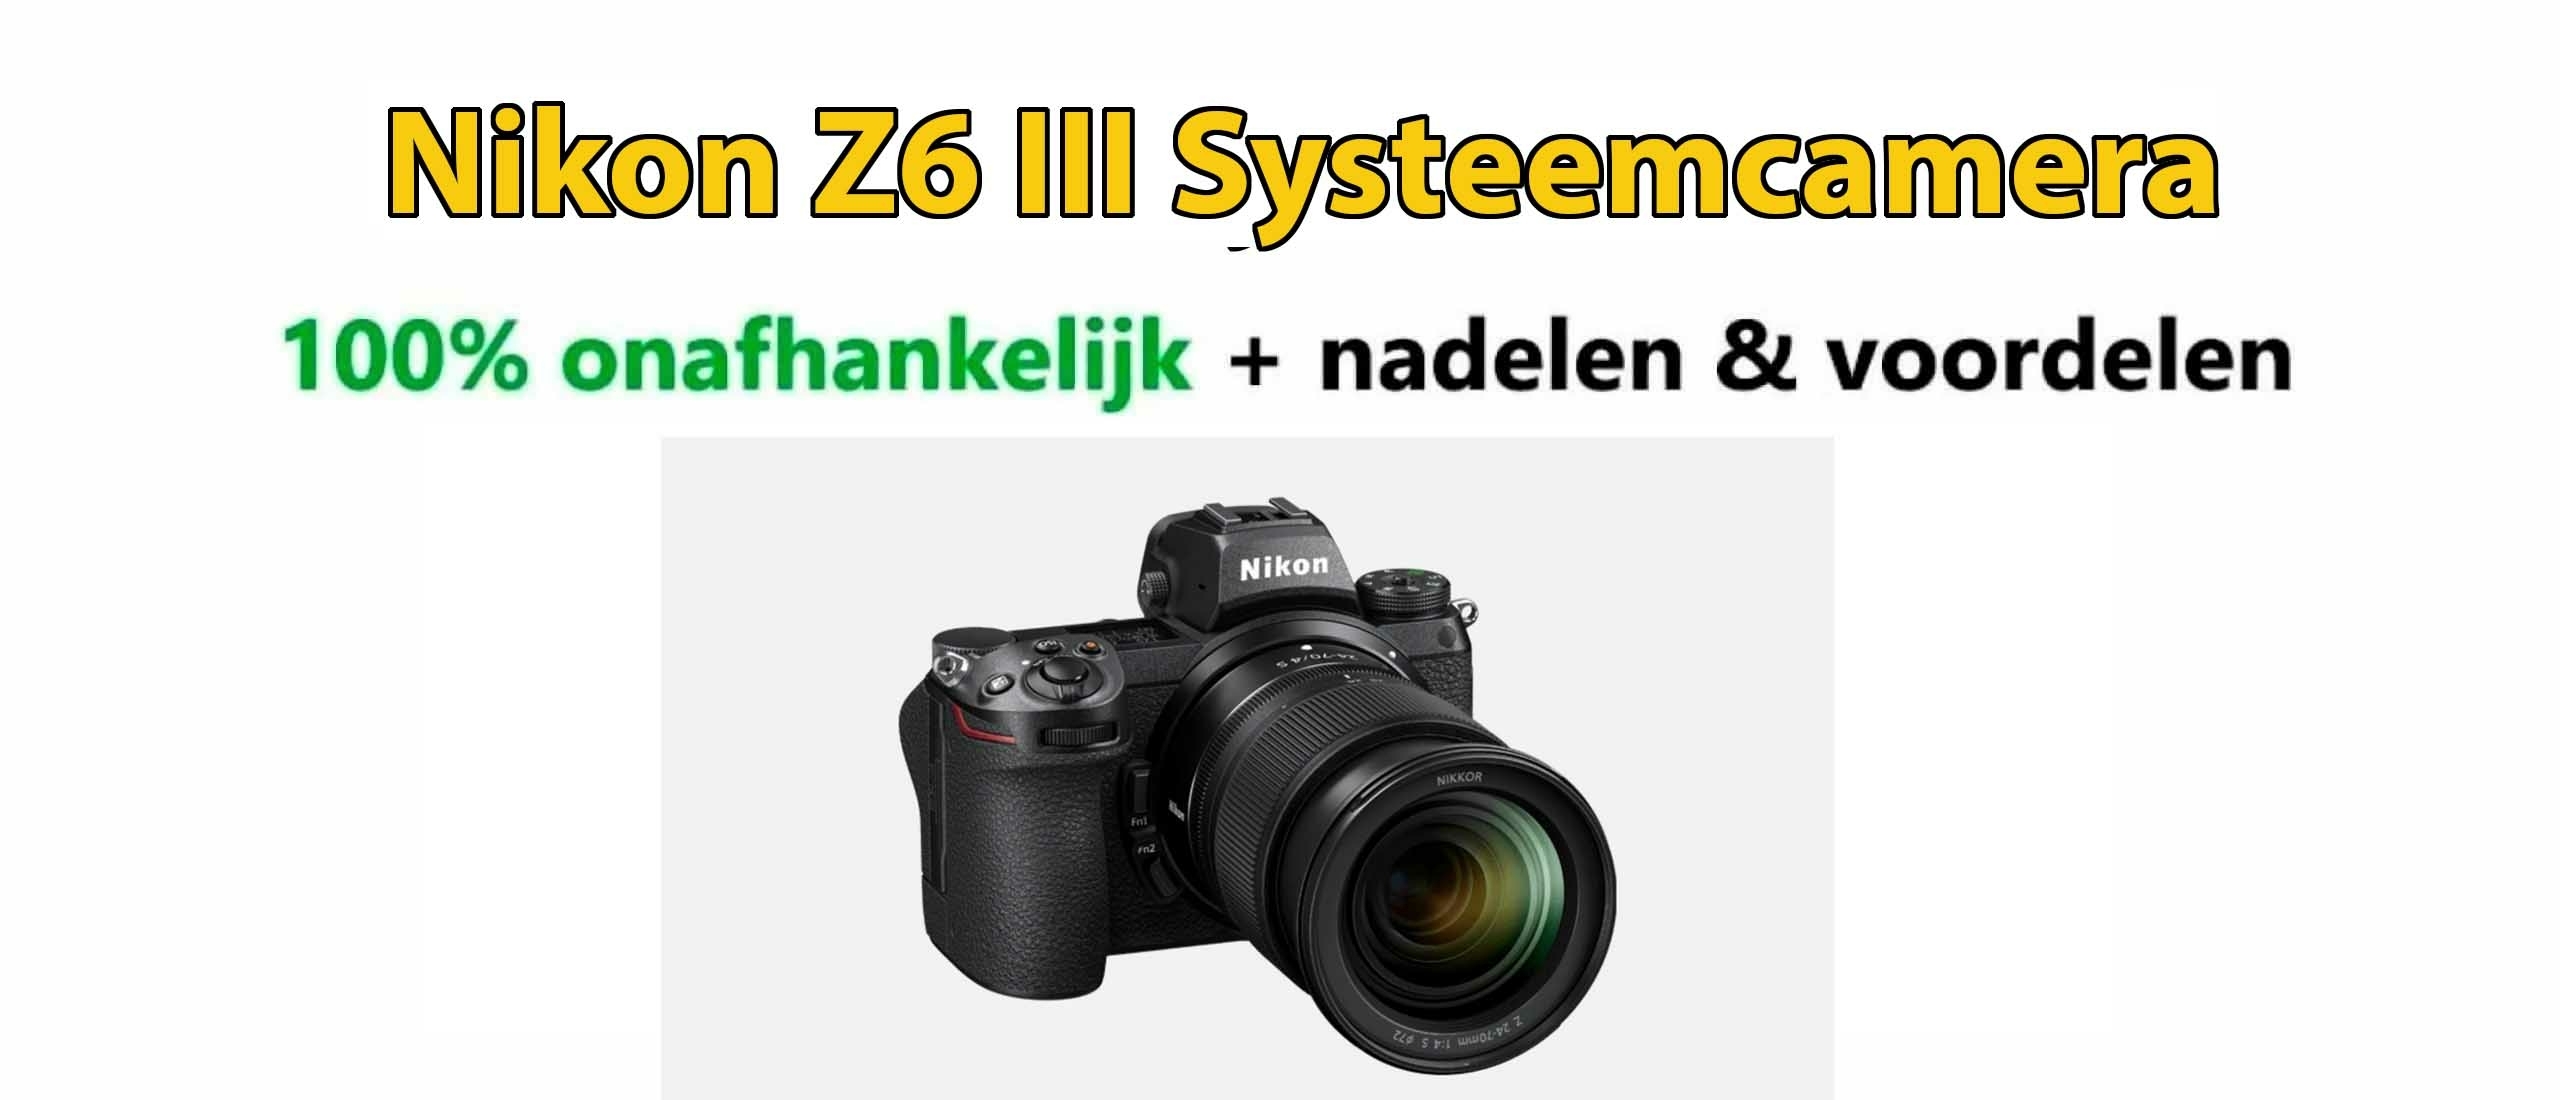 Nikon Z6 III Systeemcamera: Voordelen en Nadelen